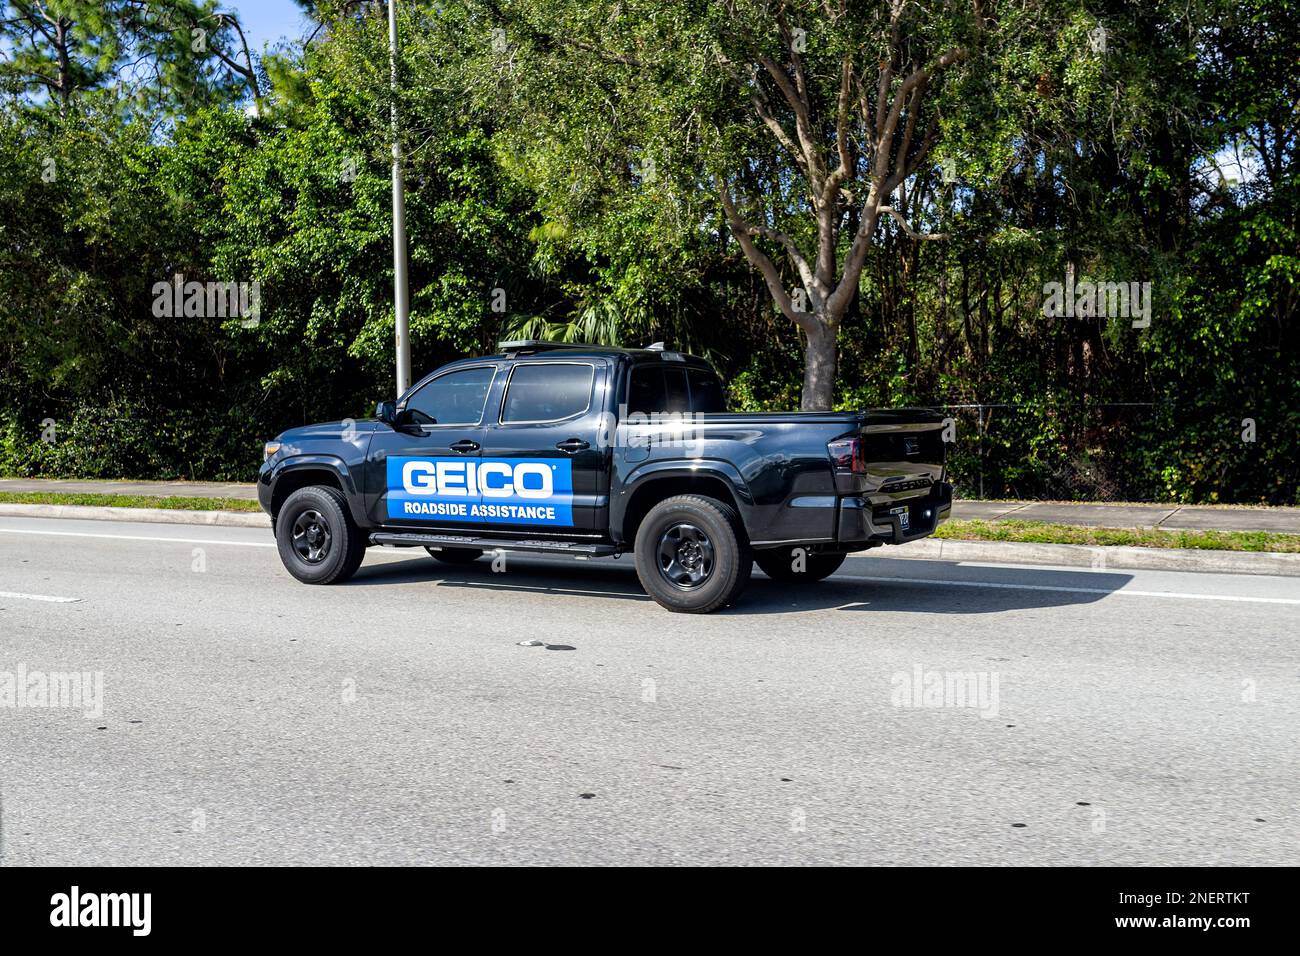 Naples, Etats-Unis - 16 février 2022: GEICO assurance automobile assistance routière camion, mécanicien de réparation conduisant sur appel route en Floride Banque D'Images